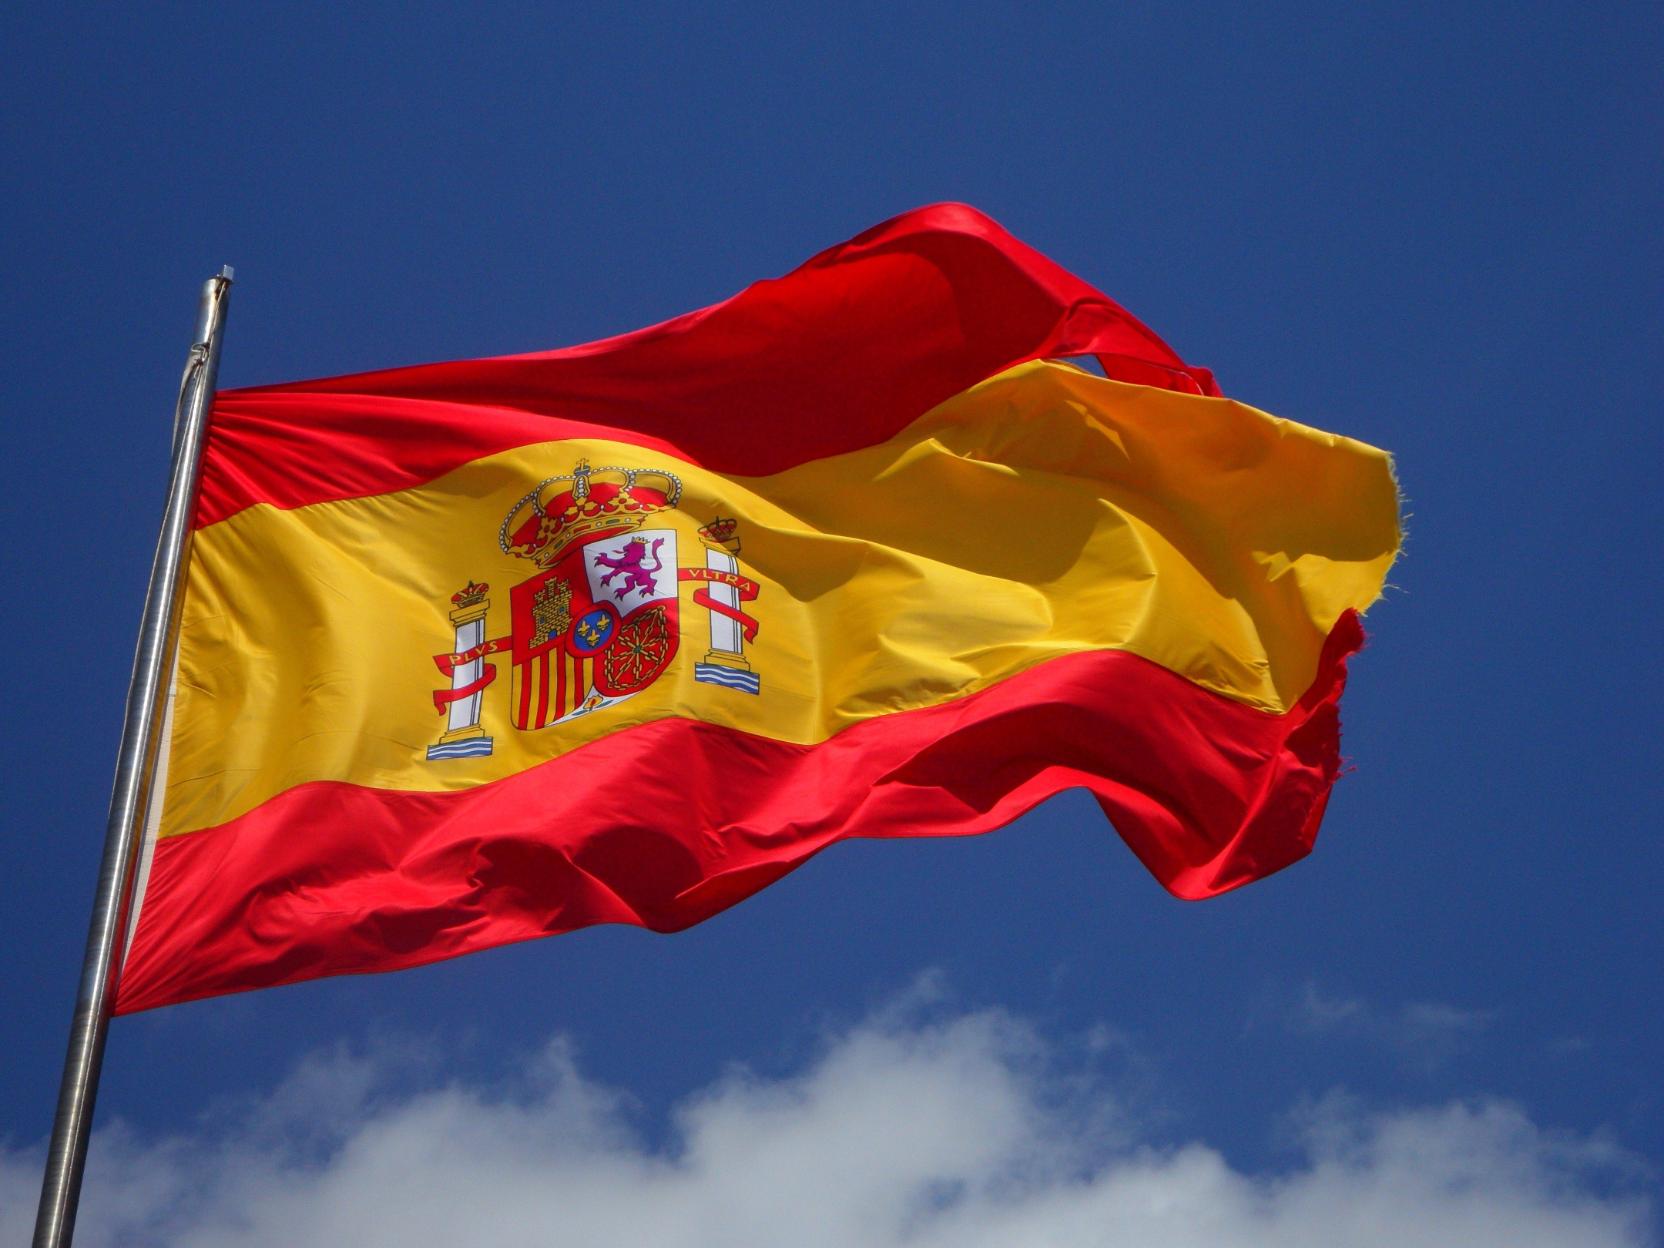 Spanish flag on a pole. 